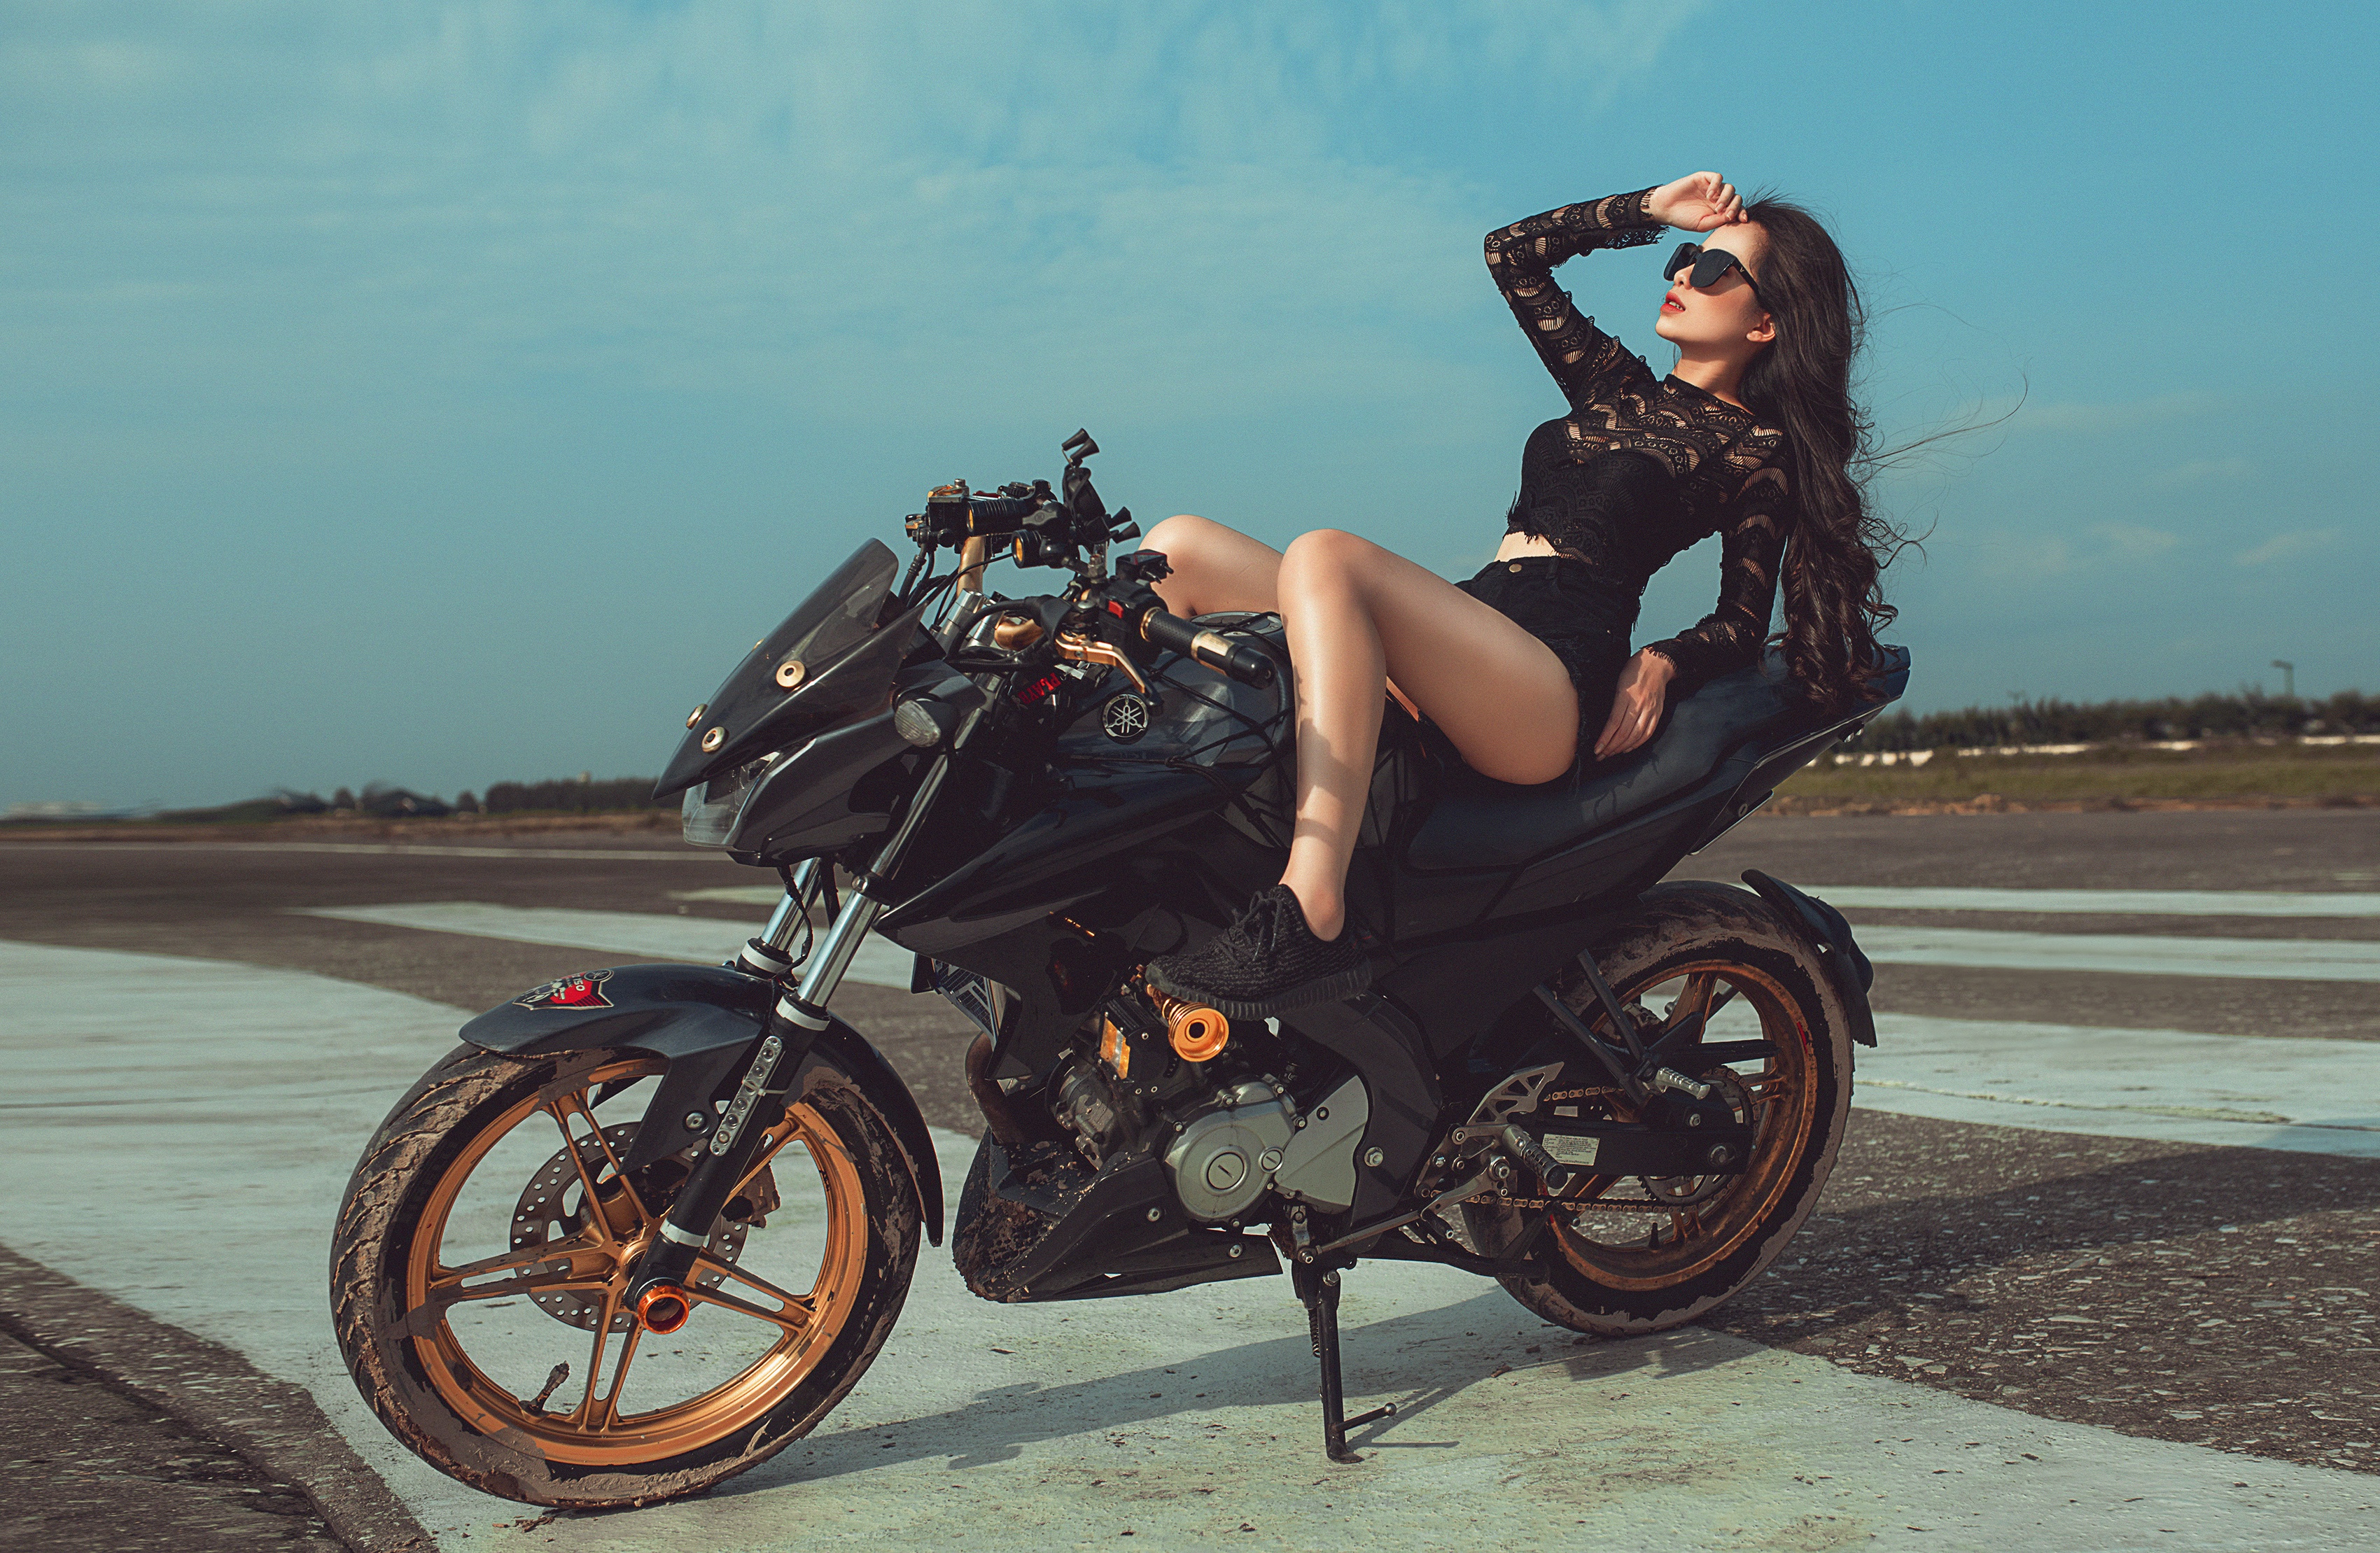 Про девушку на мотоцикле. Девушка на мотоцикле. Фотосессия на мотоцикле. Фотосессия на мотоцикле девушки. Фотосет с мотоциклом девушки.